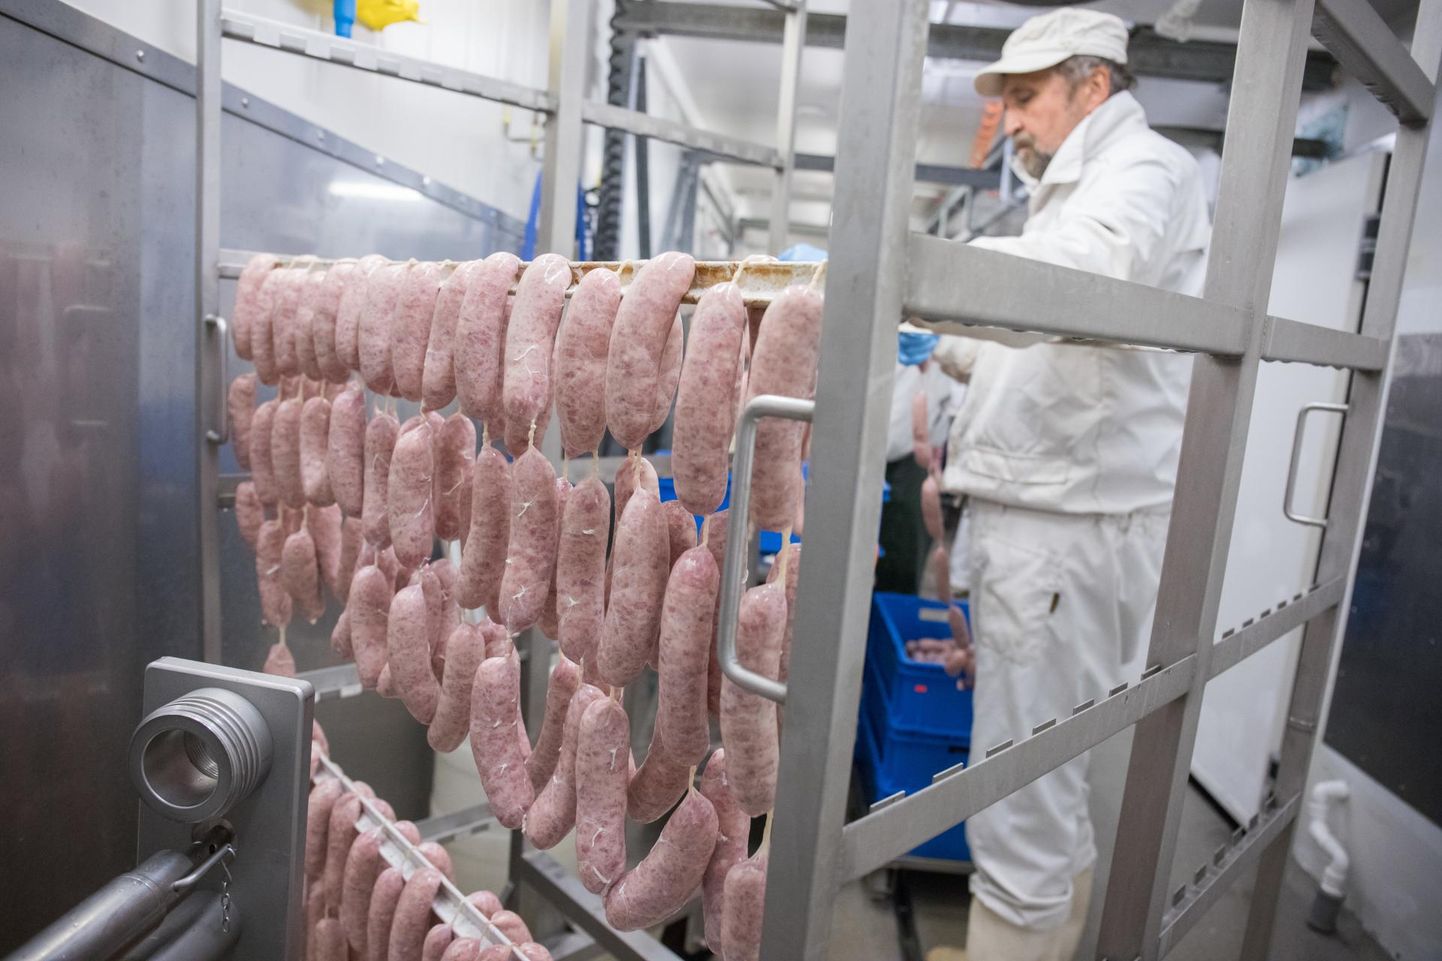 Keset kriisi laienemisplaani sihiks võtnud Matsimoka lihatööstuses teatakse, et lisaks kevade saabumisele on eestlaste jaoks kohe käes vorstide grillimise aeg.